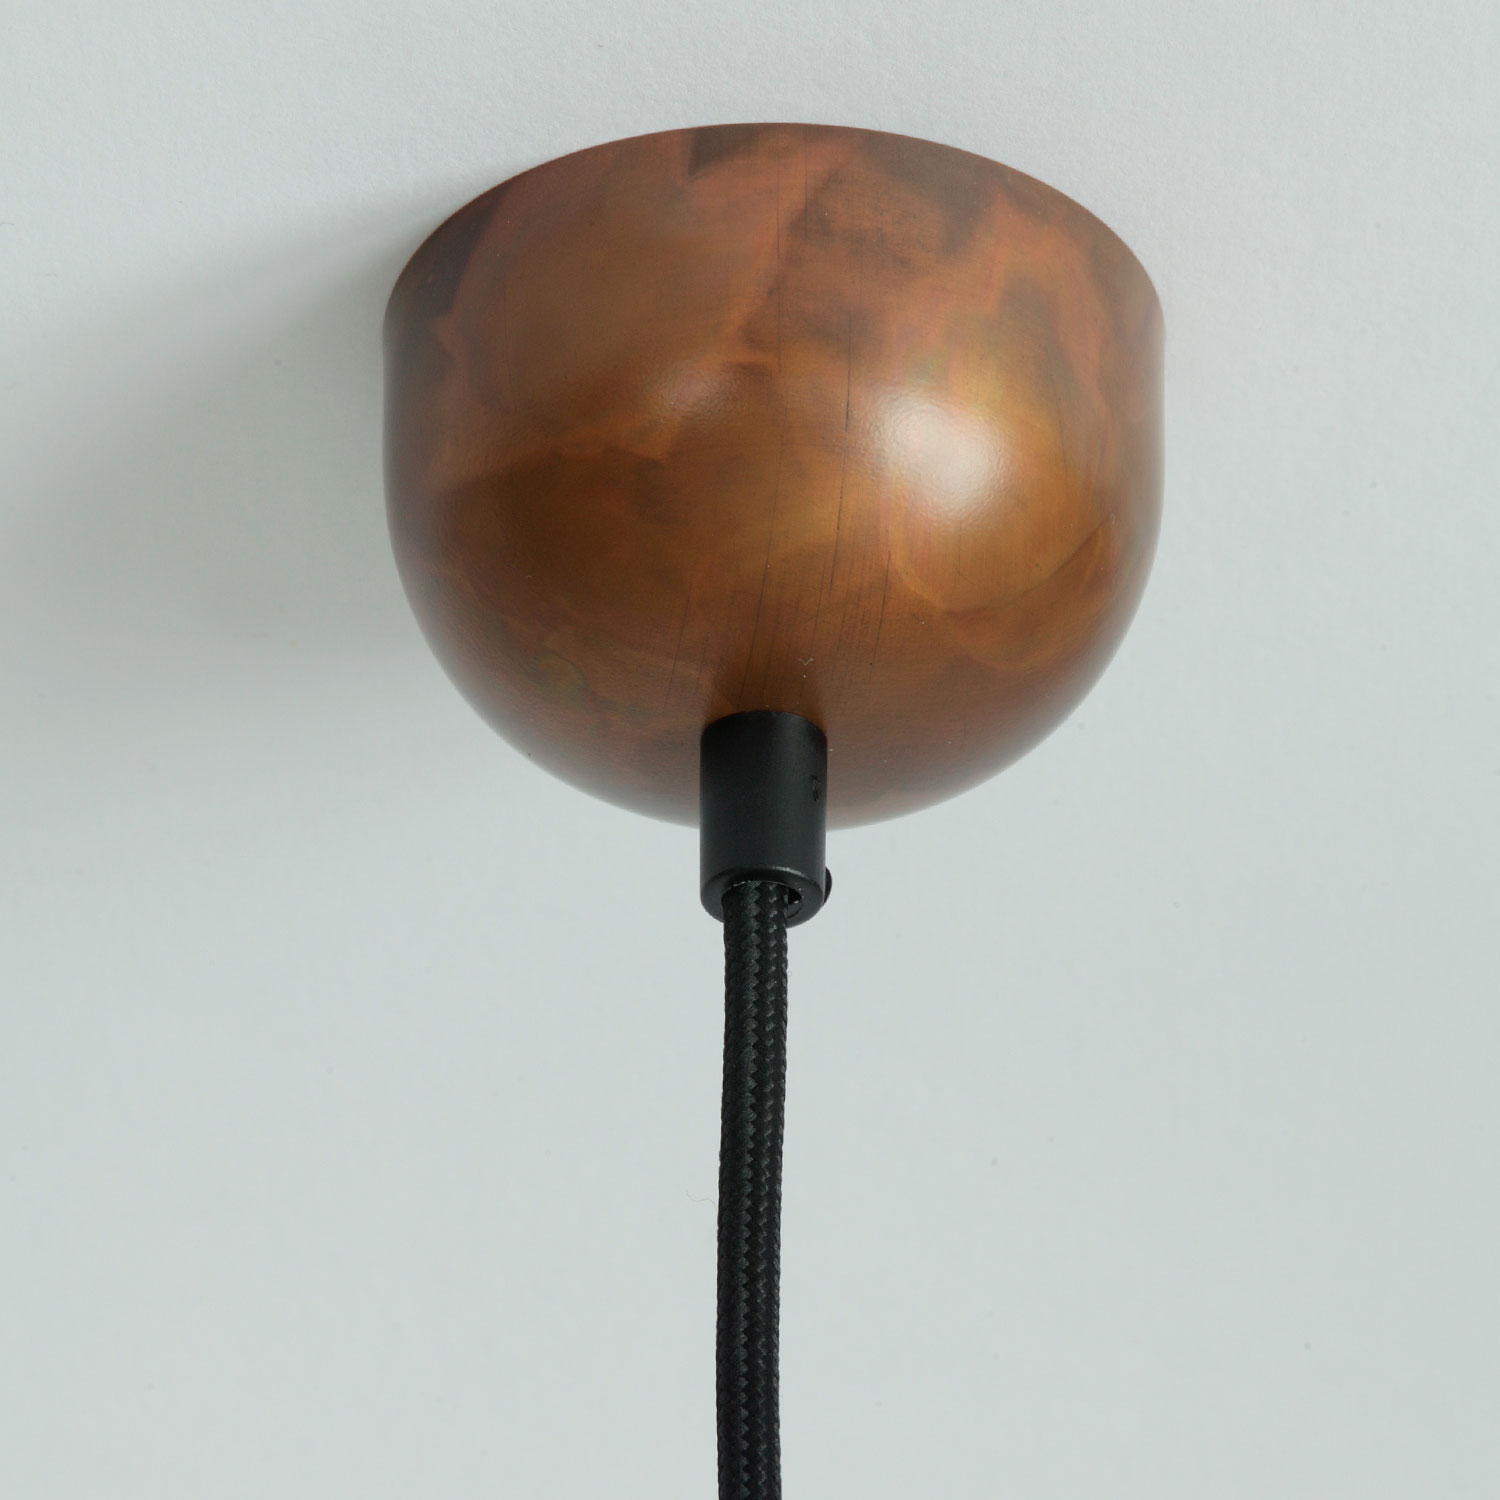 BONN Einfache, flache Hängelampe aus Kupfer Ø 16 bis 40 cm: Kupfer geflammt, matt lackiert, schwarzes Textilkabel